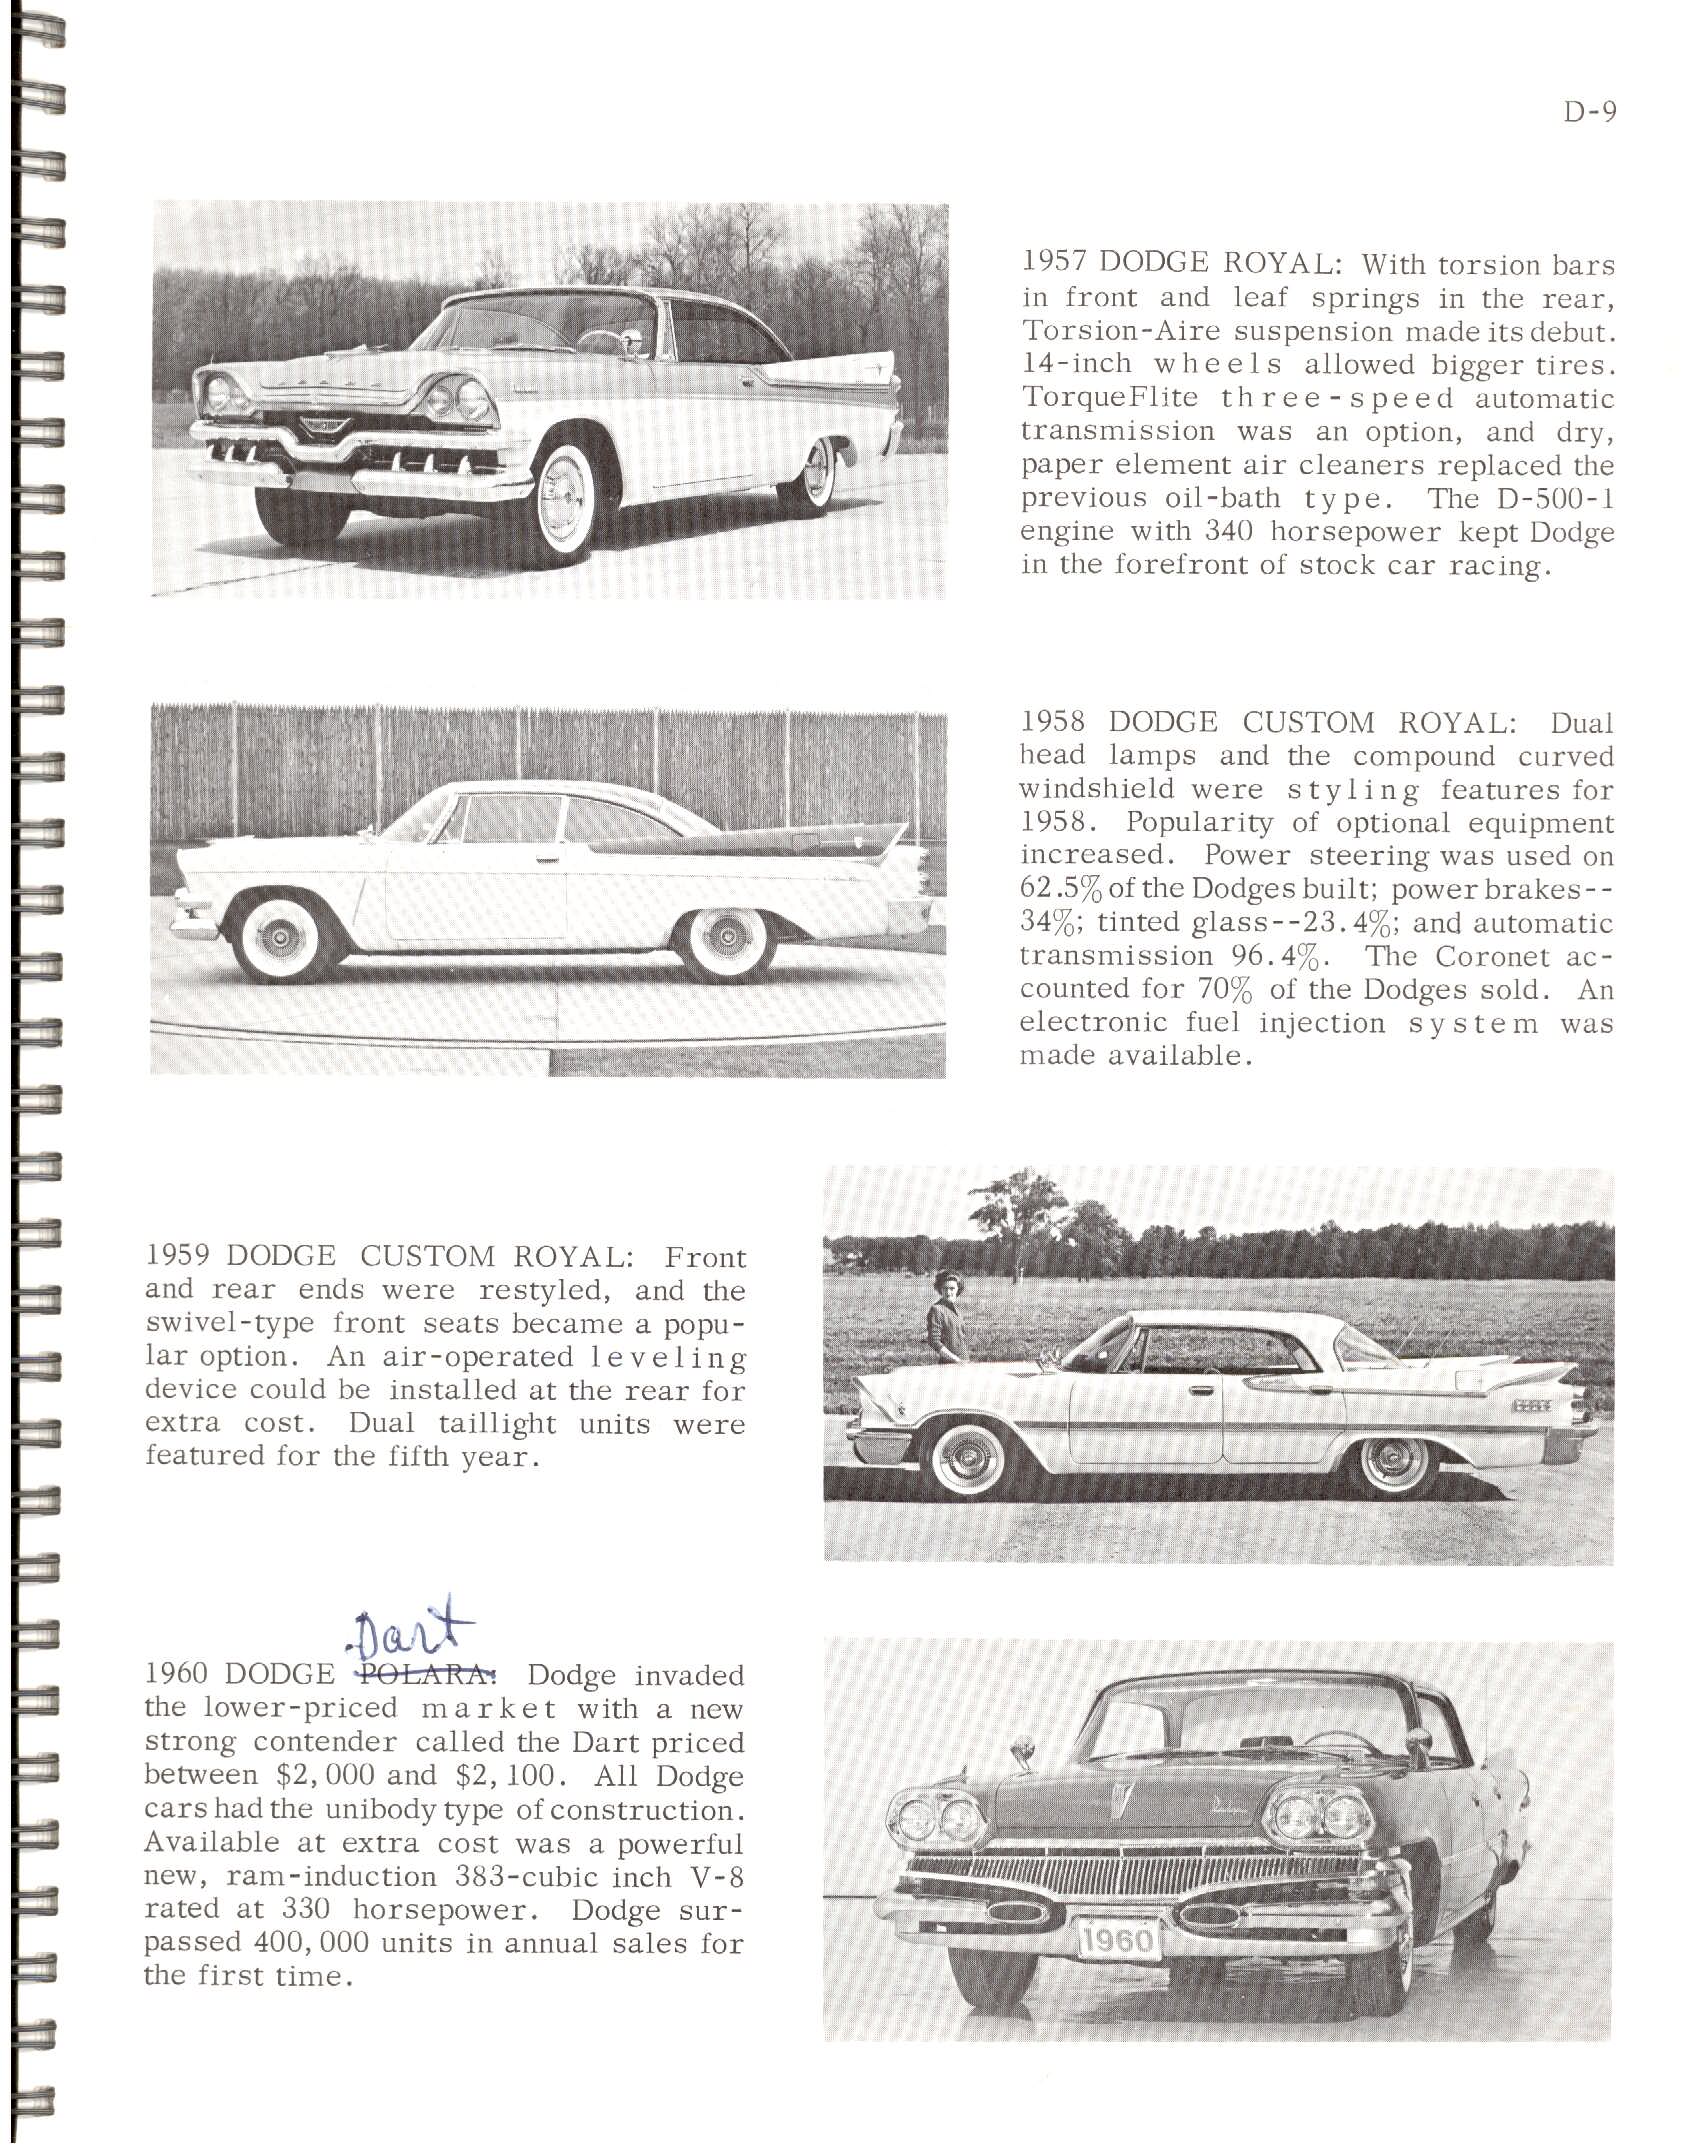 1966-History_Of_Chrysler_Cars-D09